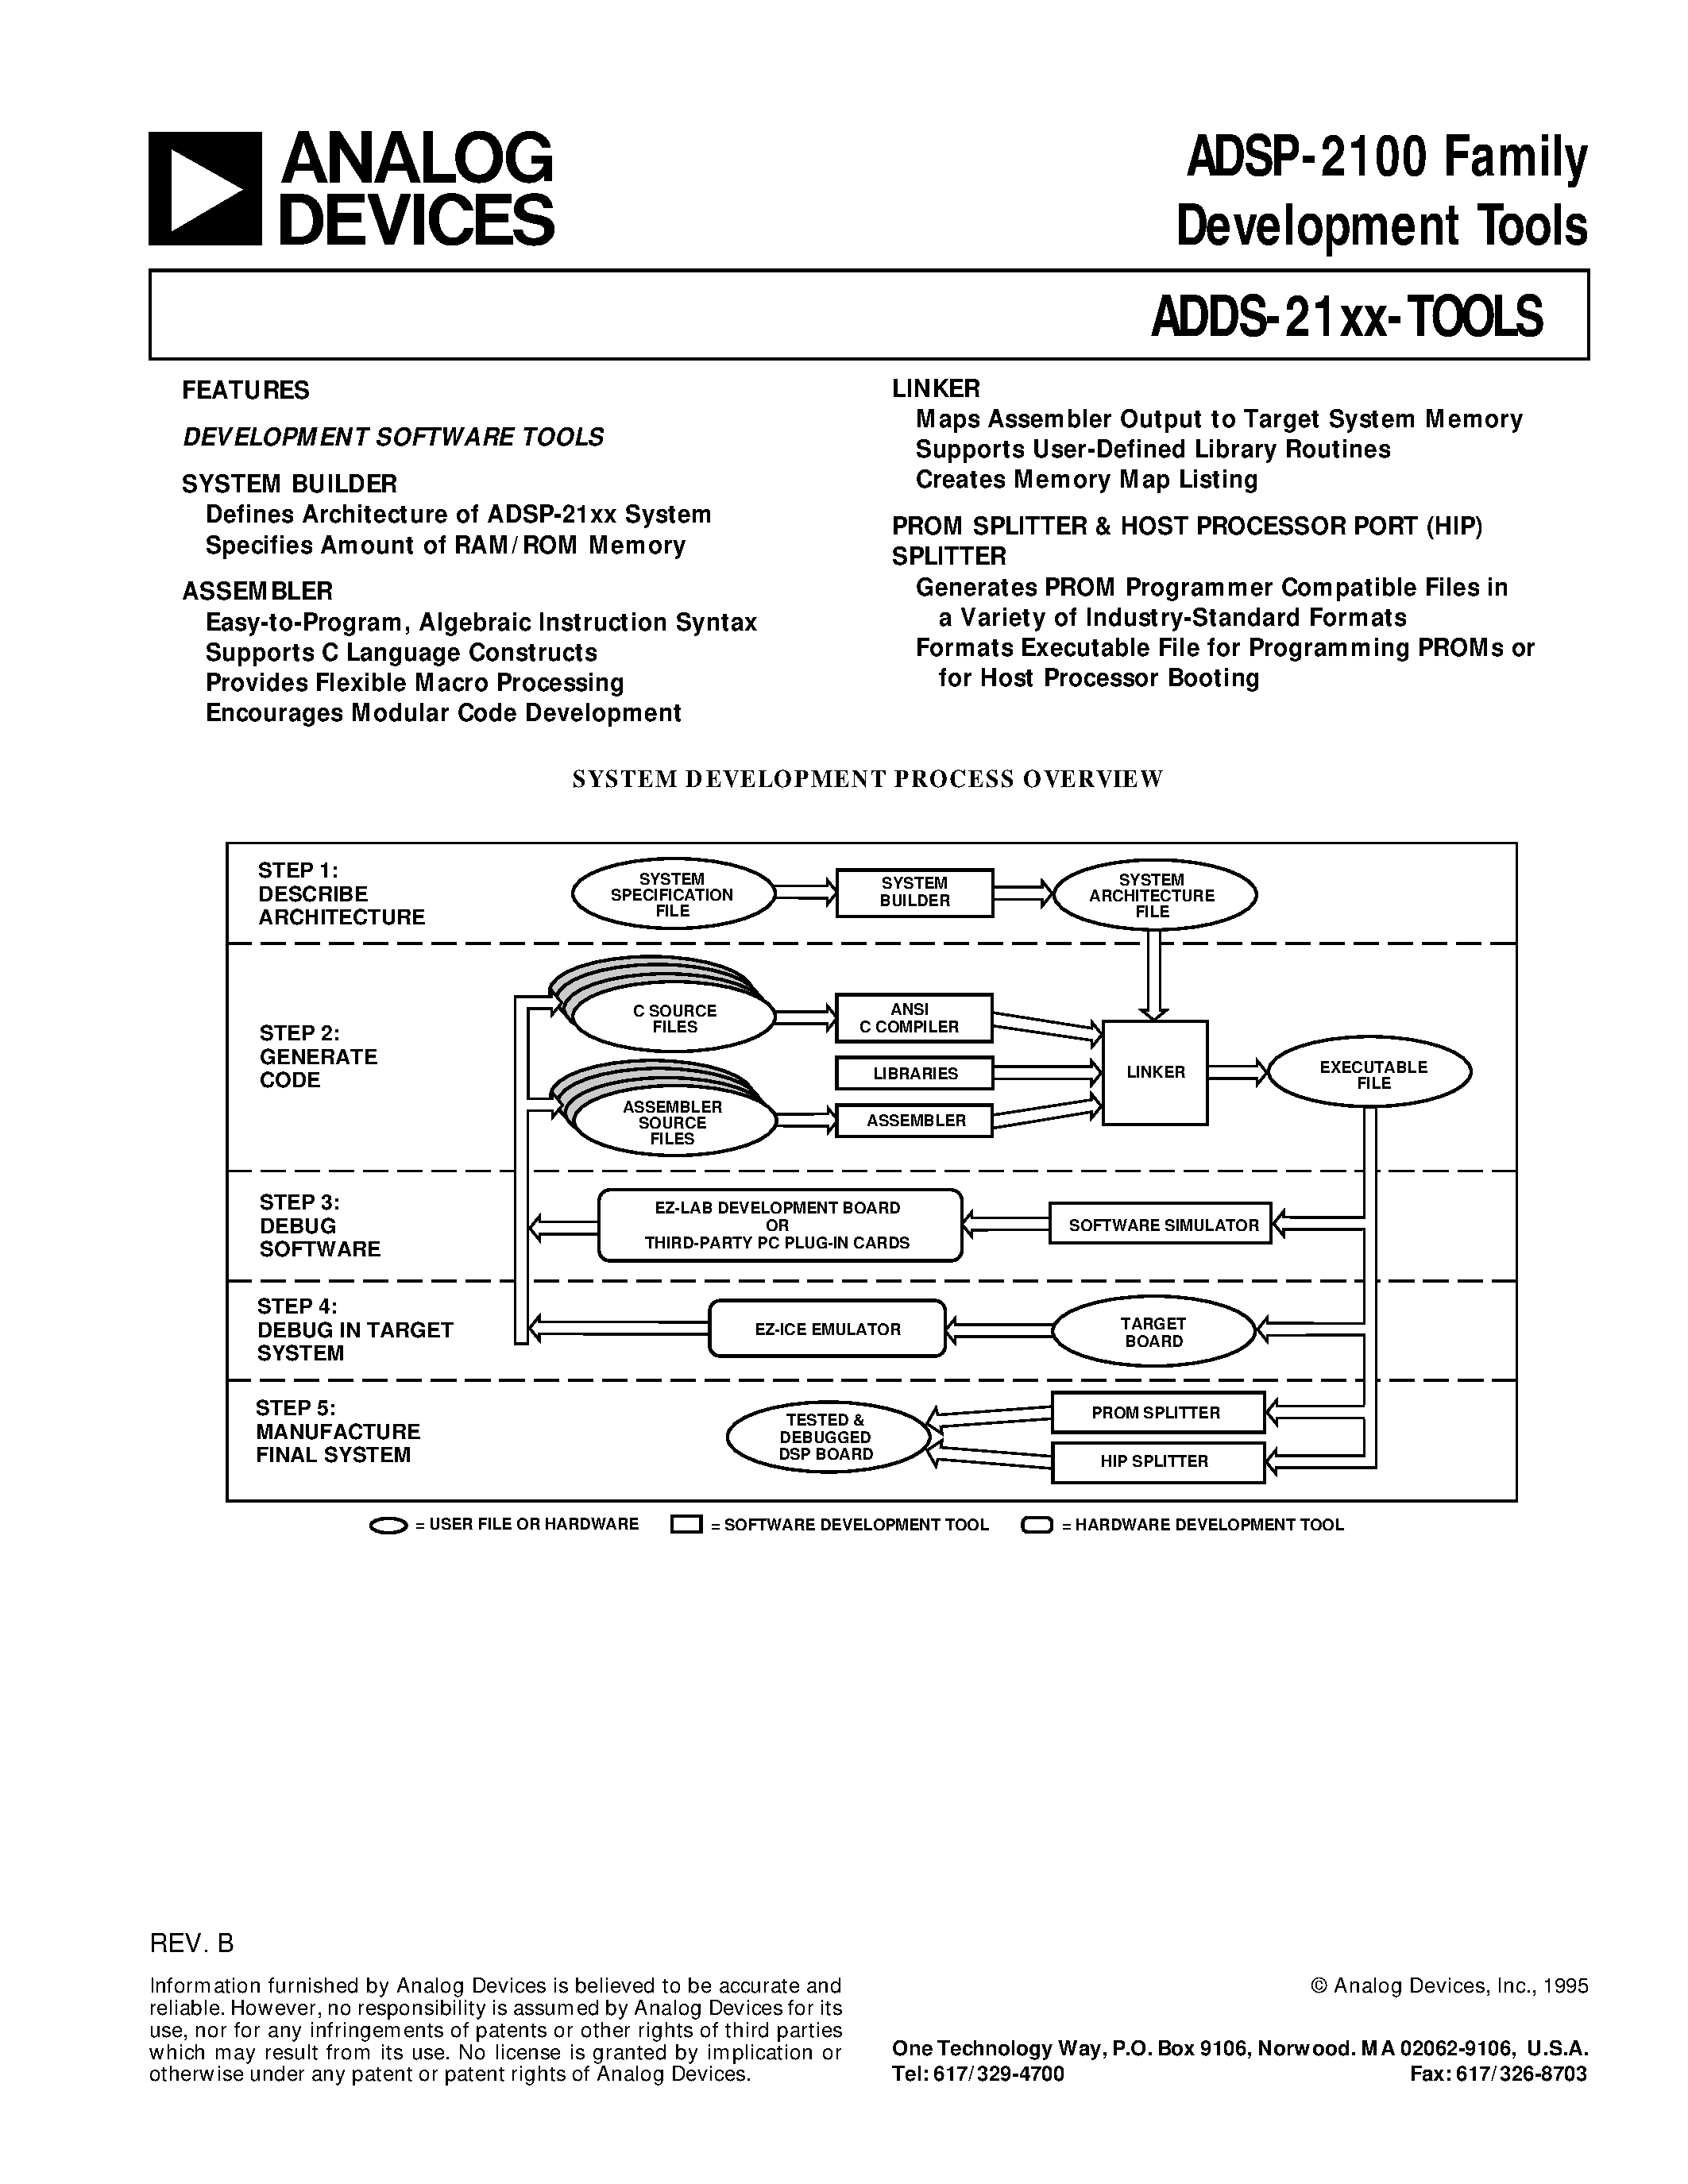 Даташит ADDS-21XX-TOOLS - ADSP-2100 Family Development Tools страница 1